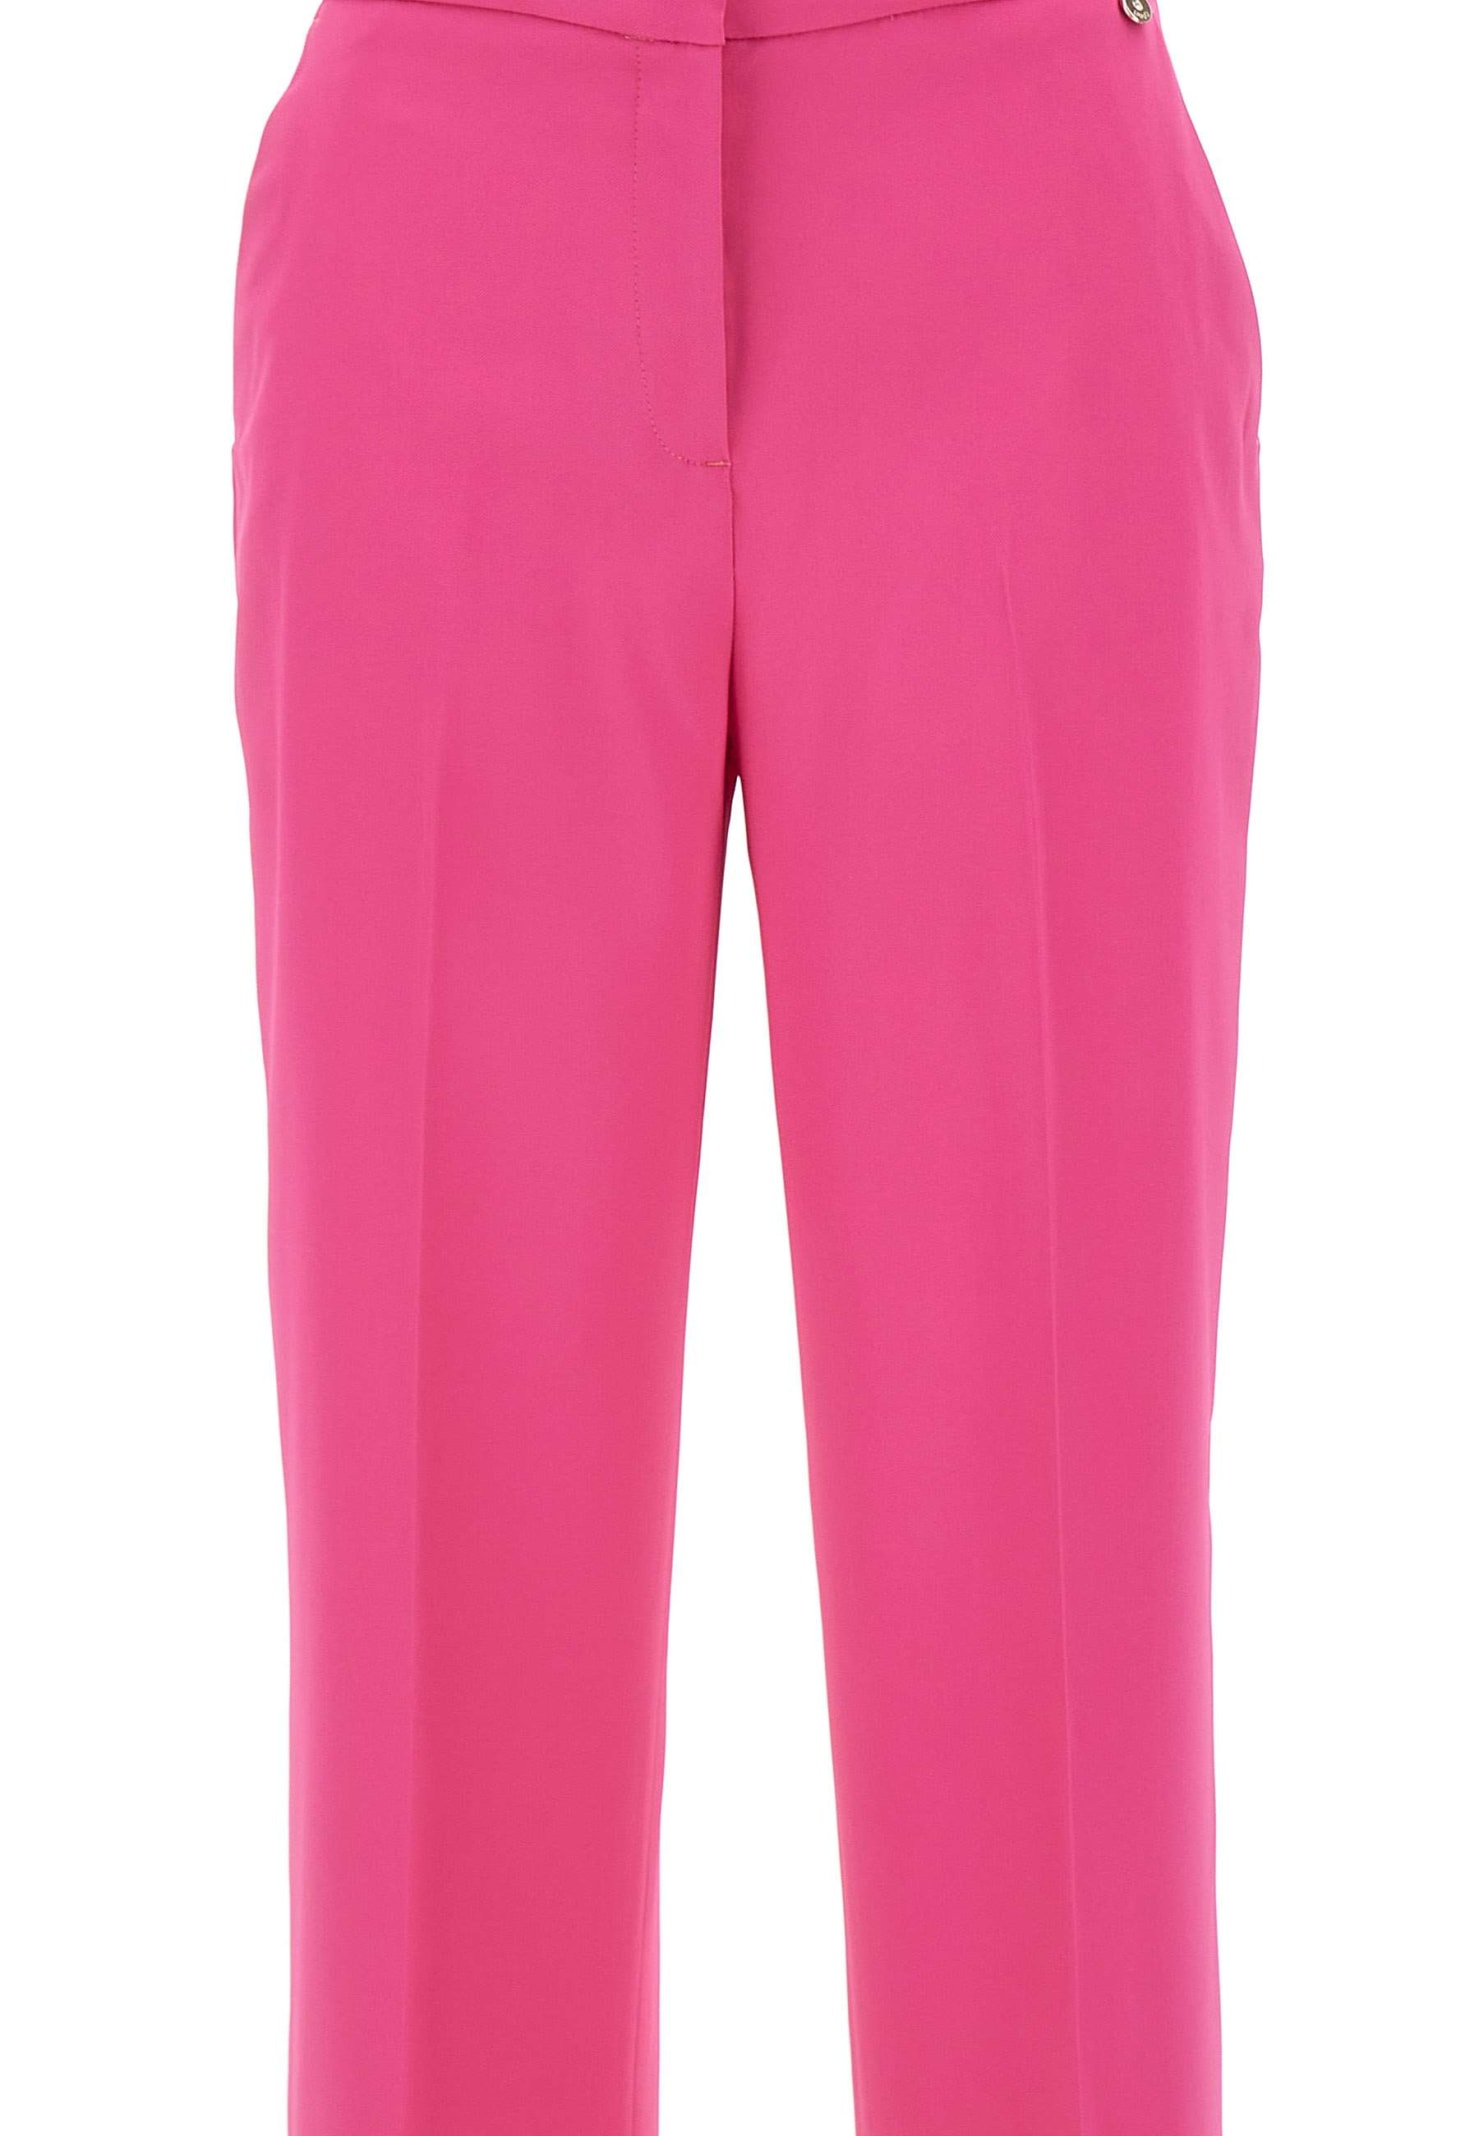 Shop Liu •jo Viscose Crêpe Trousers In Pink